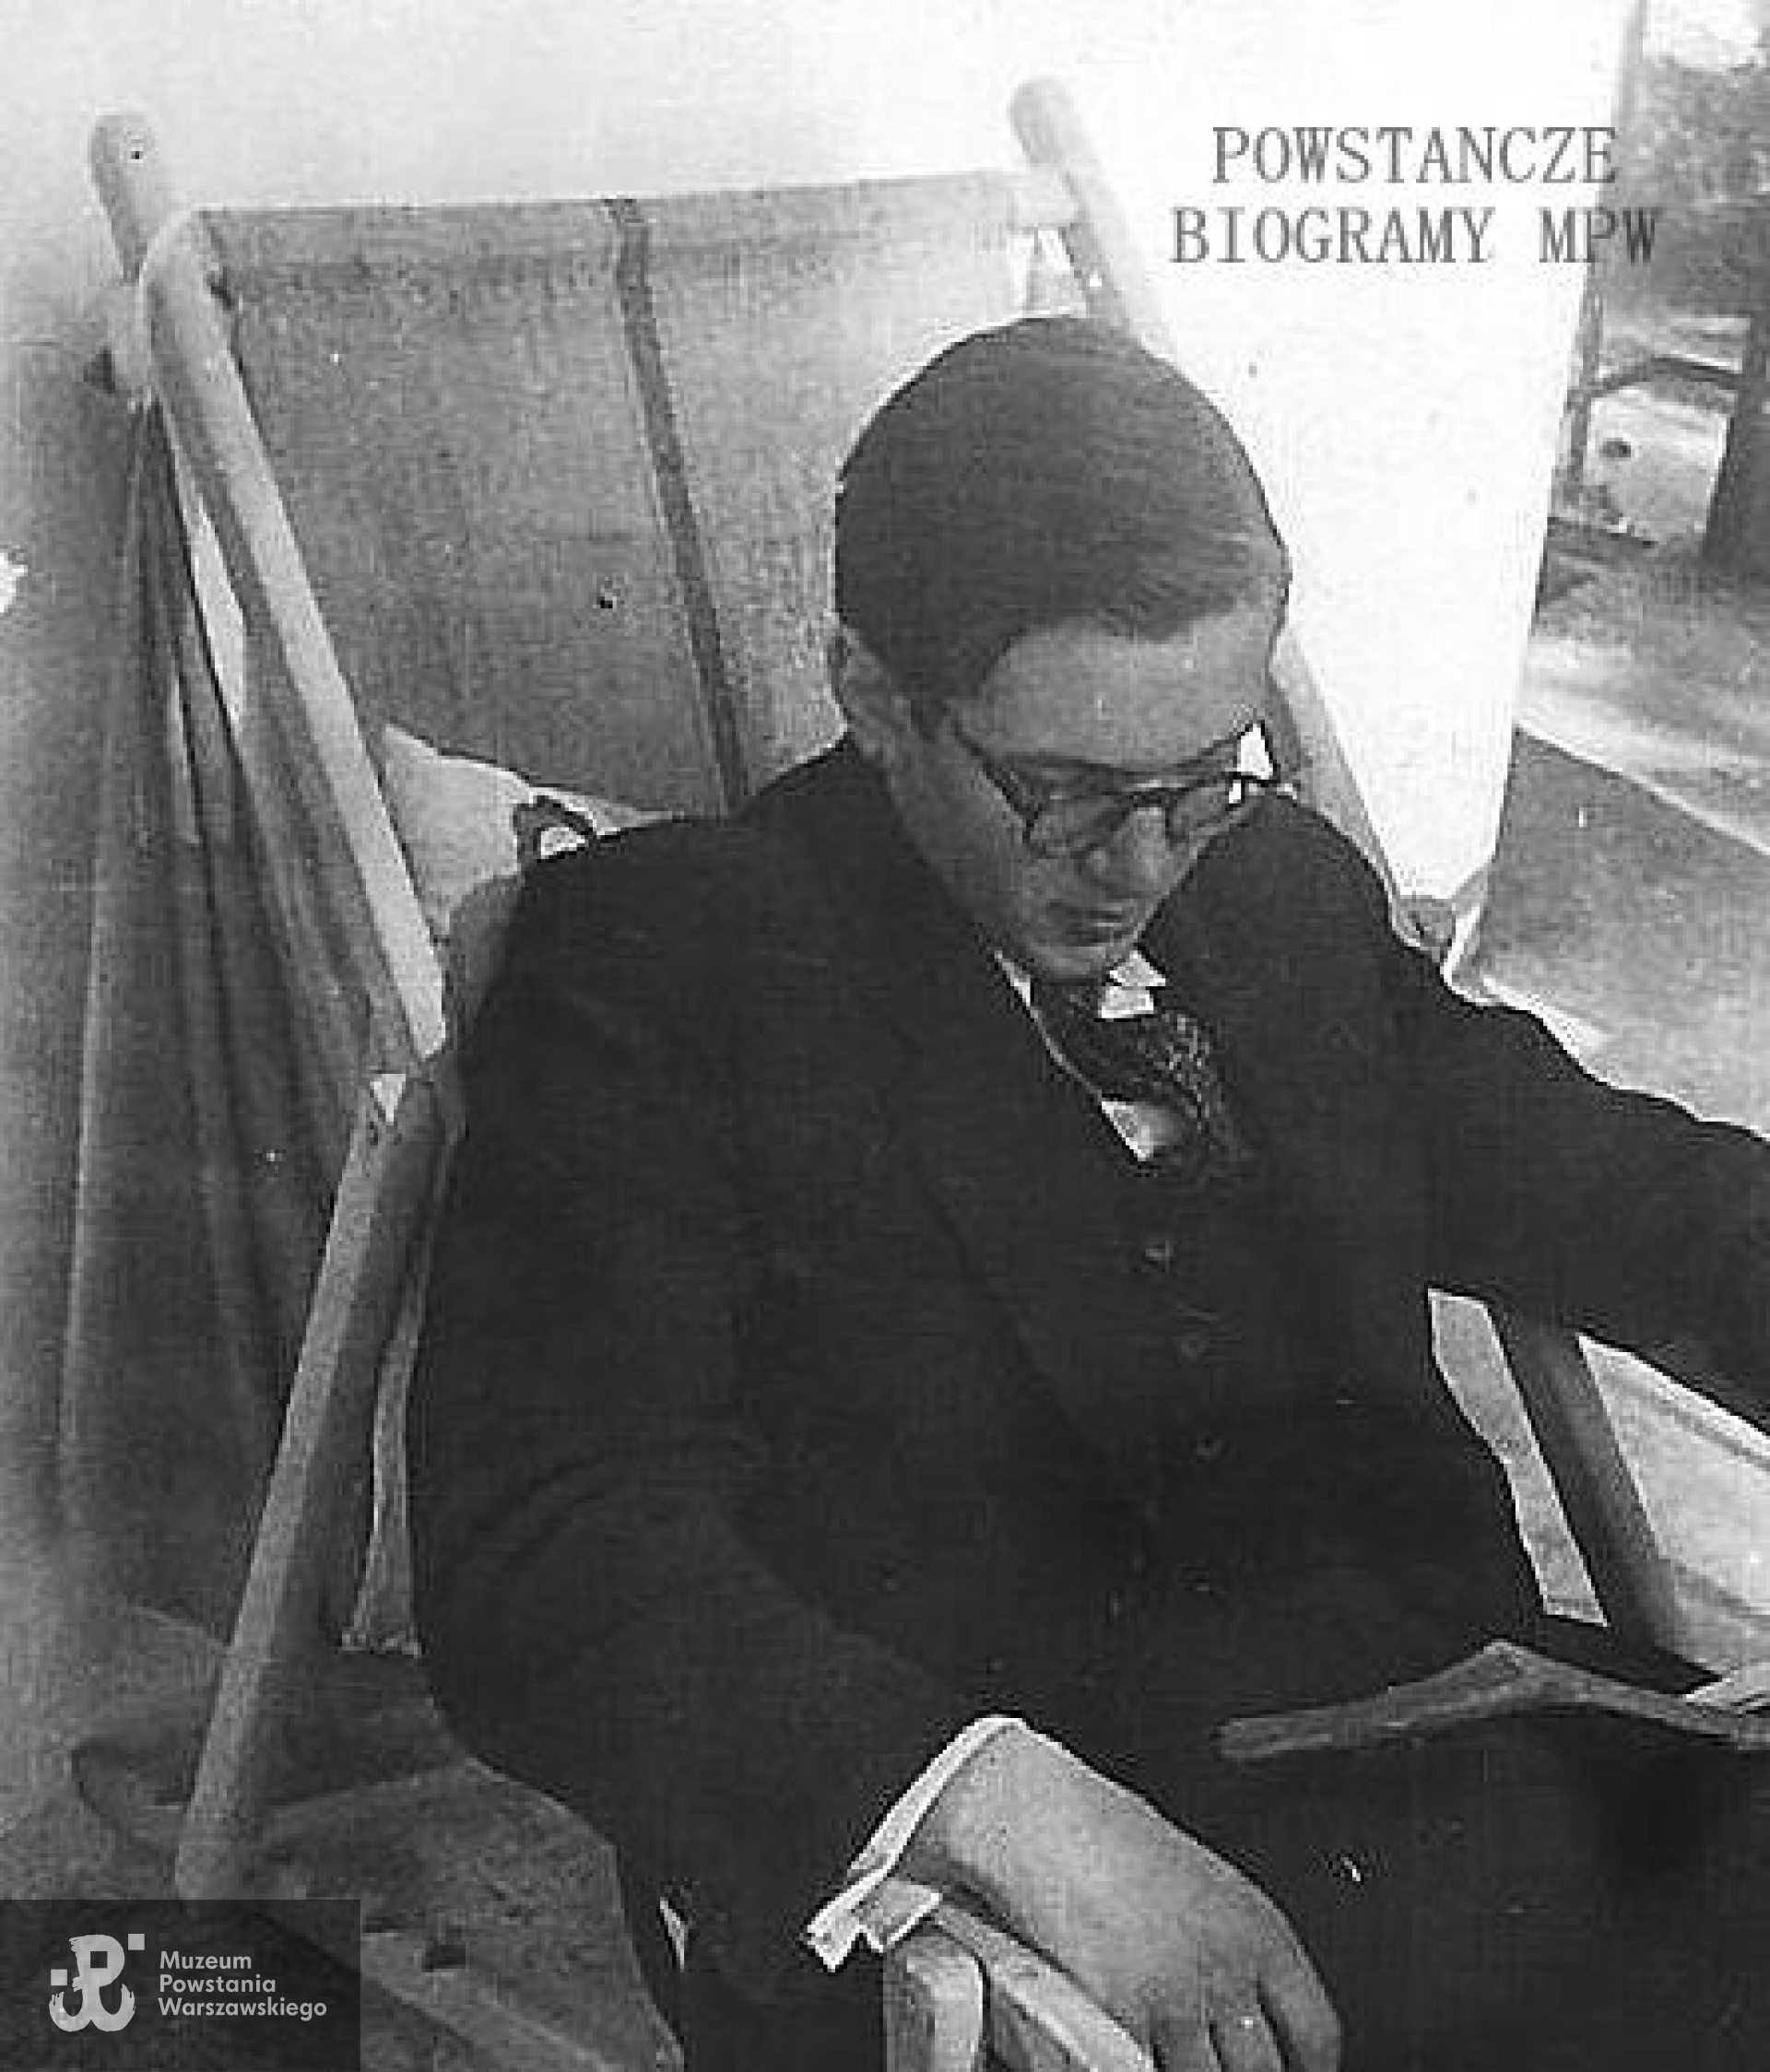 Anin 1944 r. Jerzy Mickiewicz "Mruczek" na leżaku. Zdjęcie wykonane najprawdopodobniej miesiąc przed śmiercią - w lipcu 1944 r. Fot. z archiwum rodzinnego Józefa Kaczkowskiego